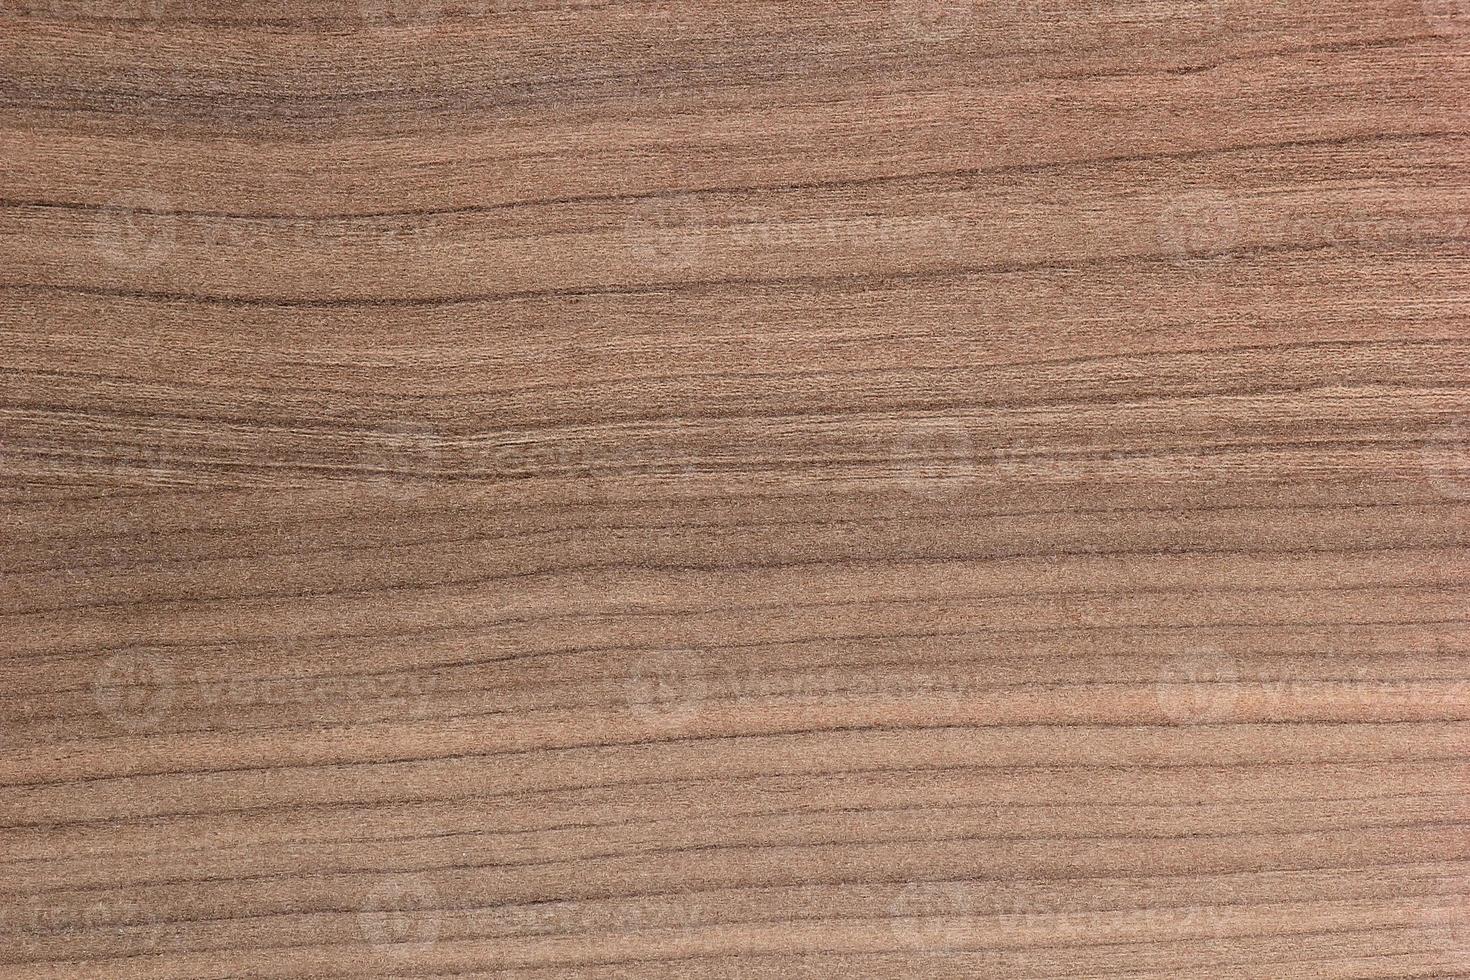 panneau de bois brun pour le fond ou la texture photo